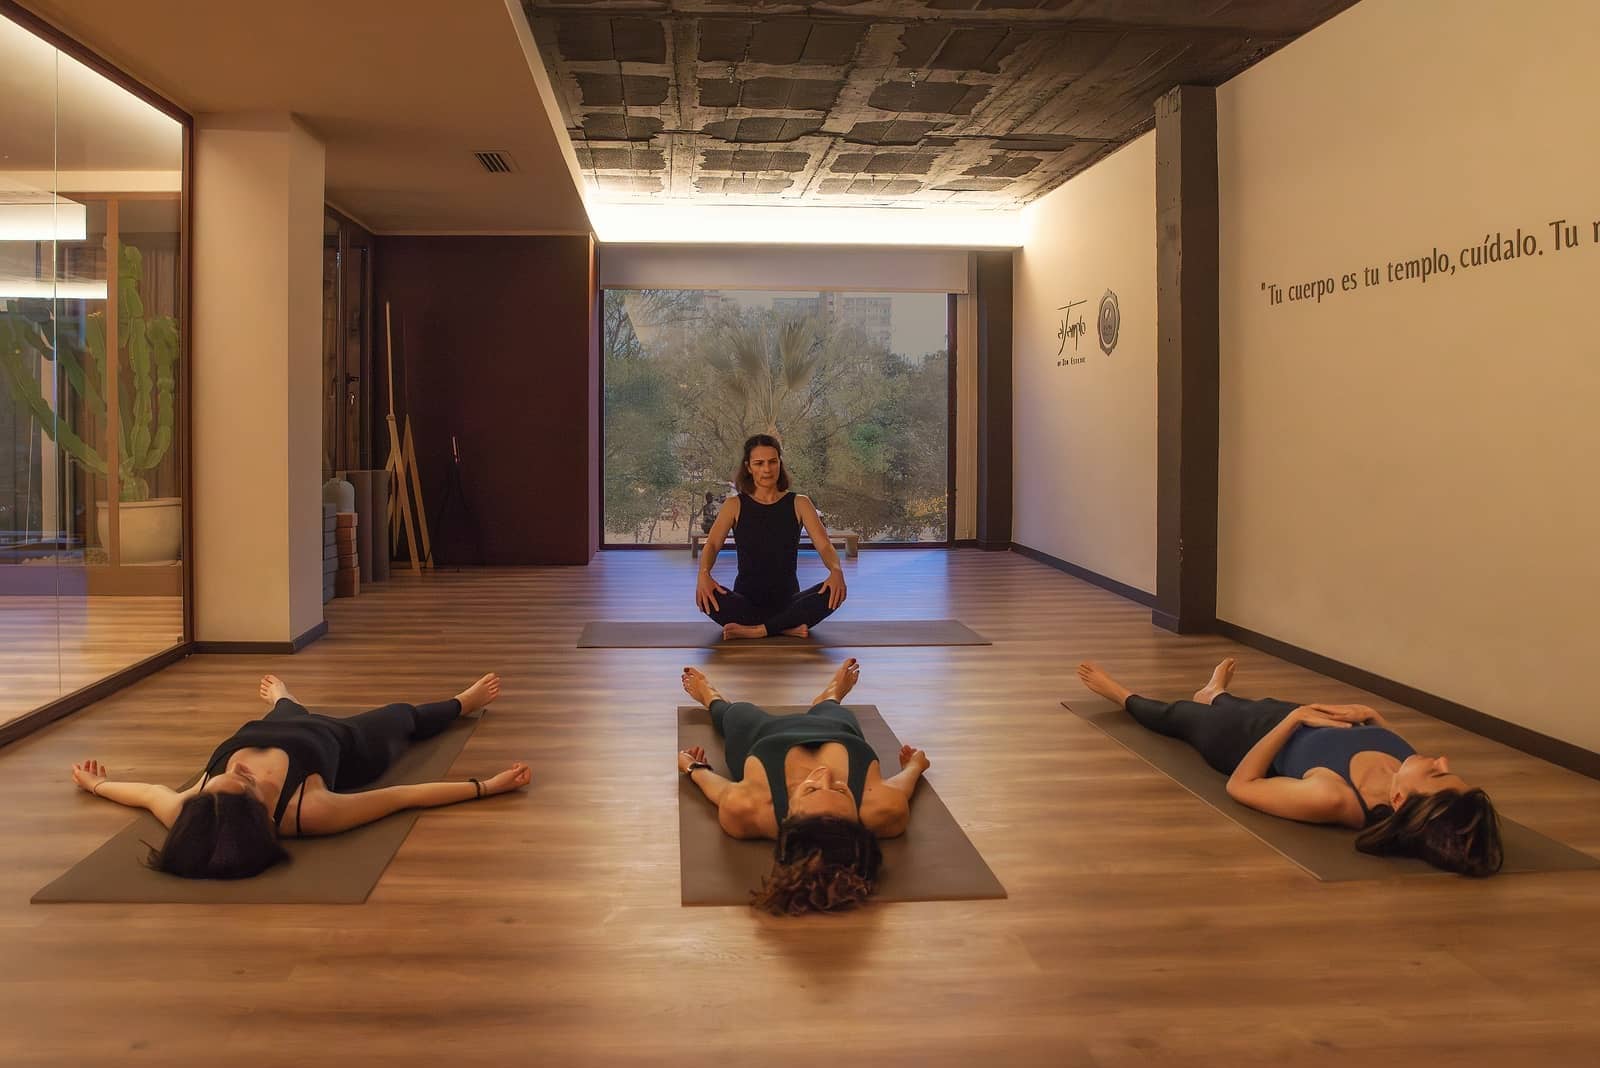 clases-de-yoga-alicante-nueva-sala-templo